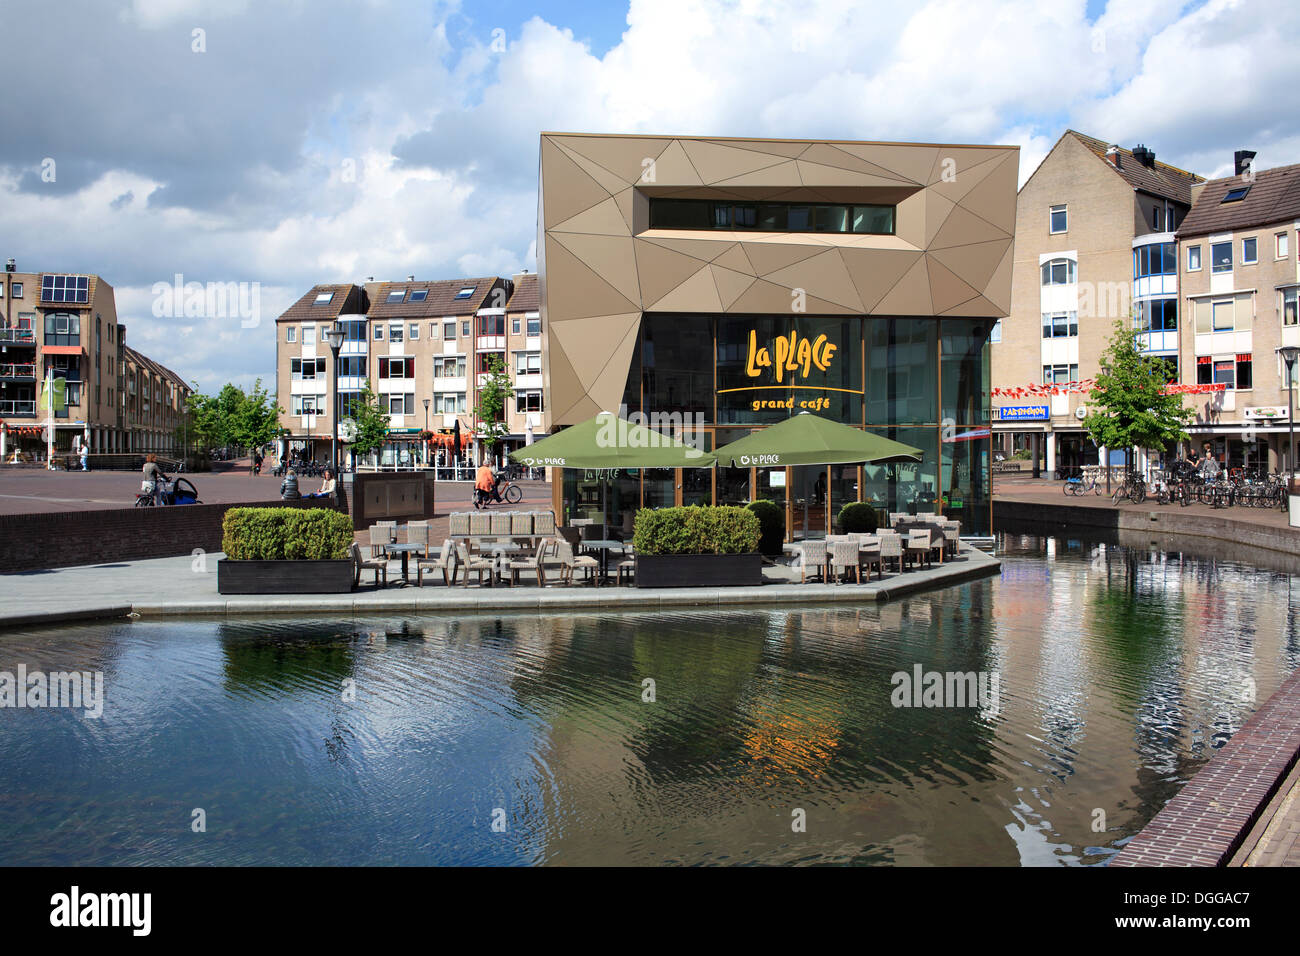 Le cafe de la Place et de l'eau dans la partie de la ville de Houten, une nouvelle ville néerlandaise près d'Utrecht, Pays-Bas Banque D'Images